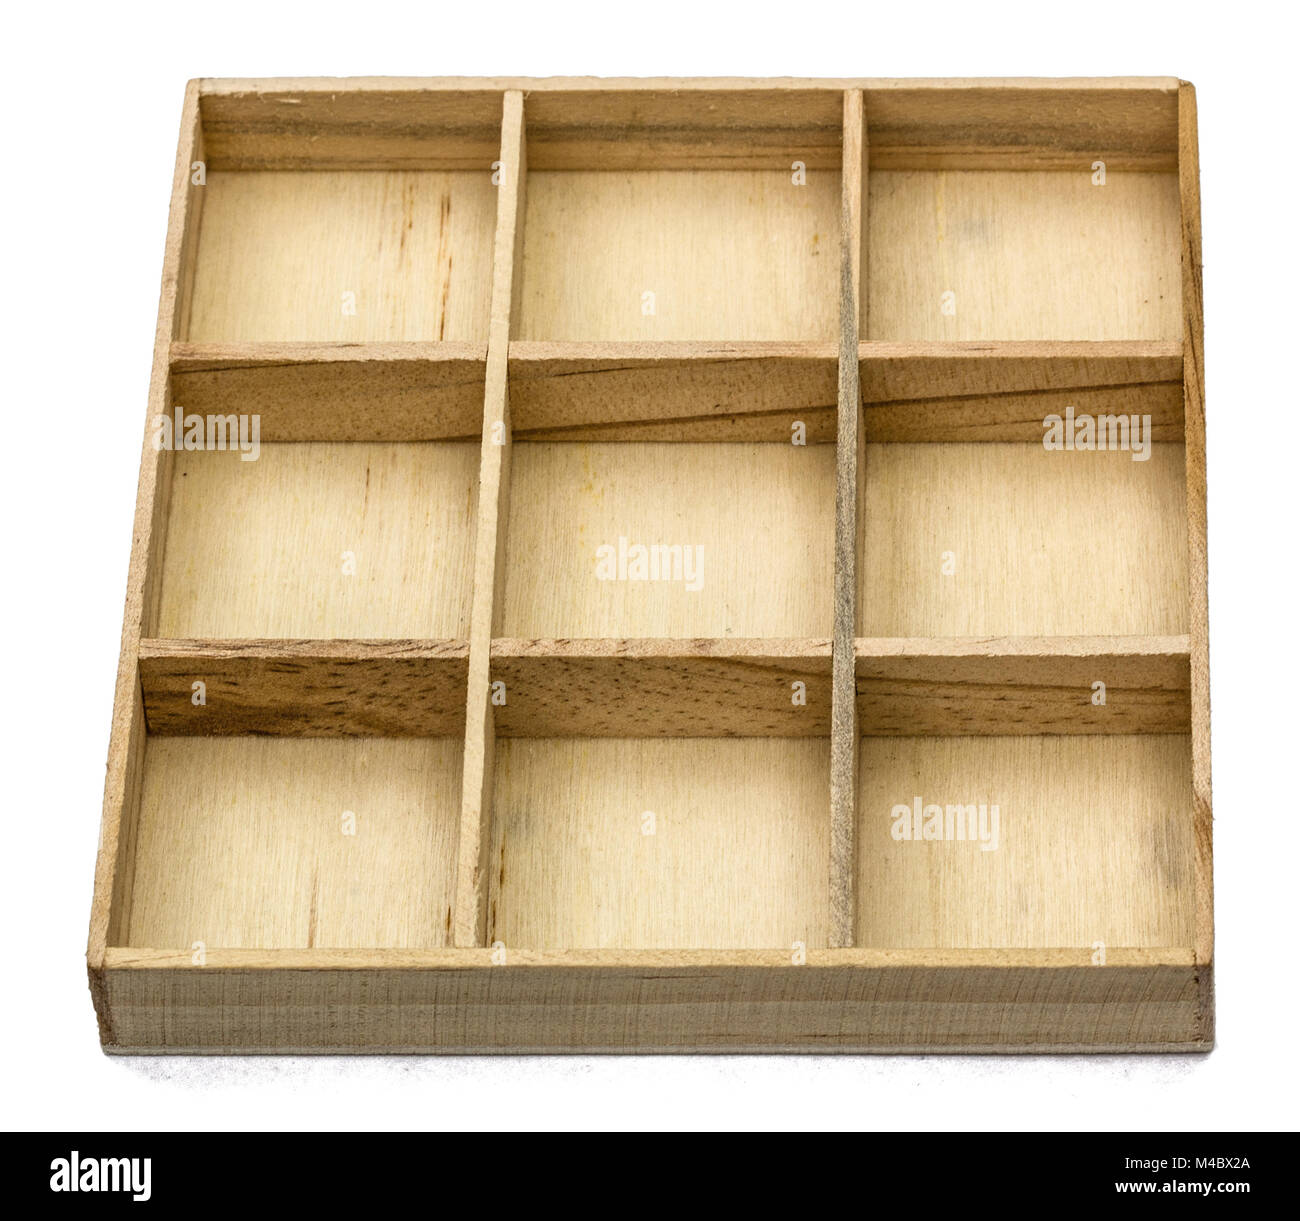 Scatola in legno per oggetti di piccole dimensioni, isolato su sfondo bianco Foto Stock